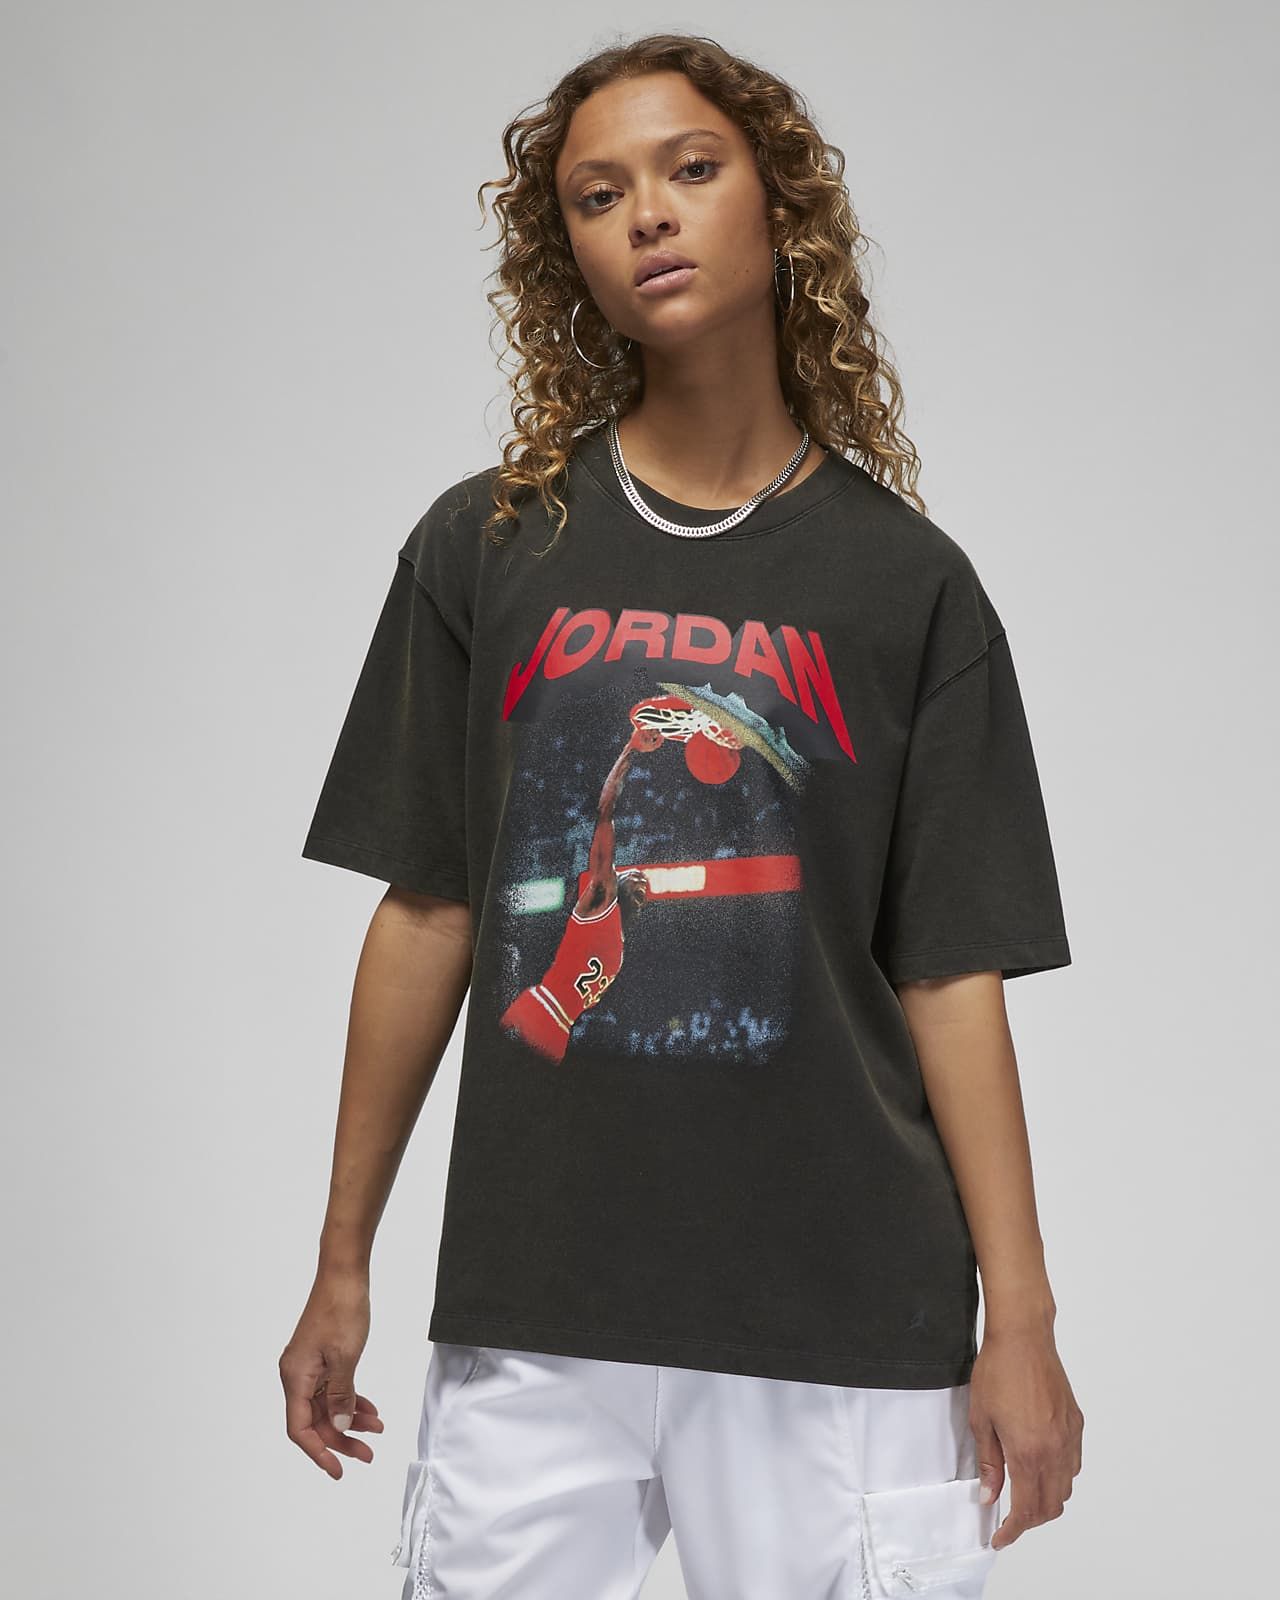 Jordan (Her)itage | Nike (US)